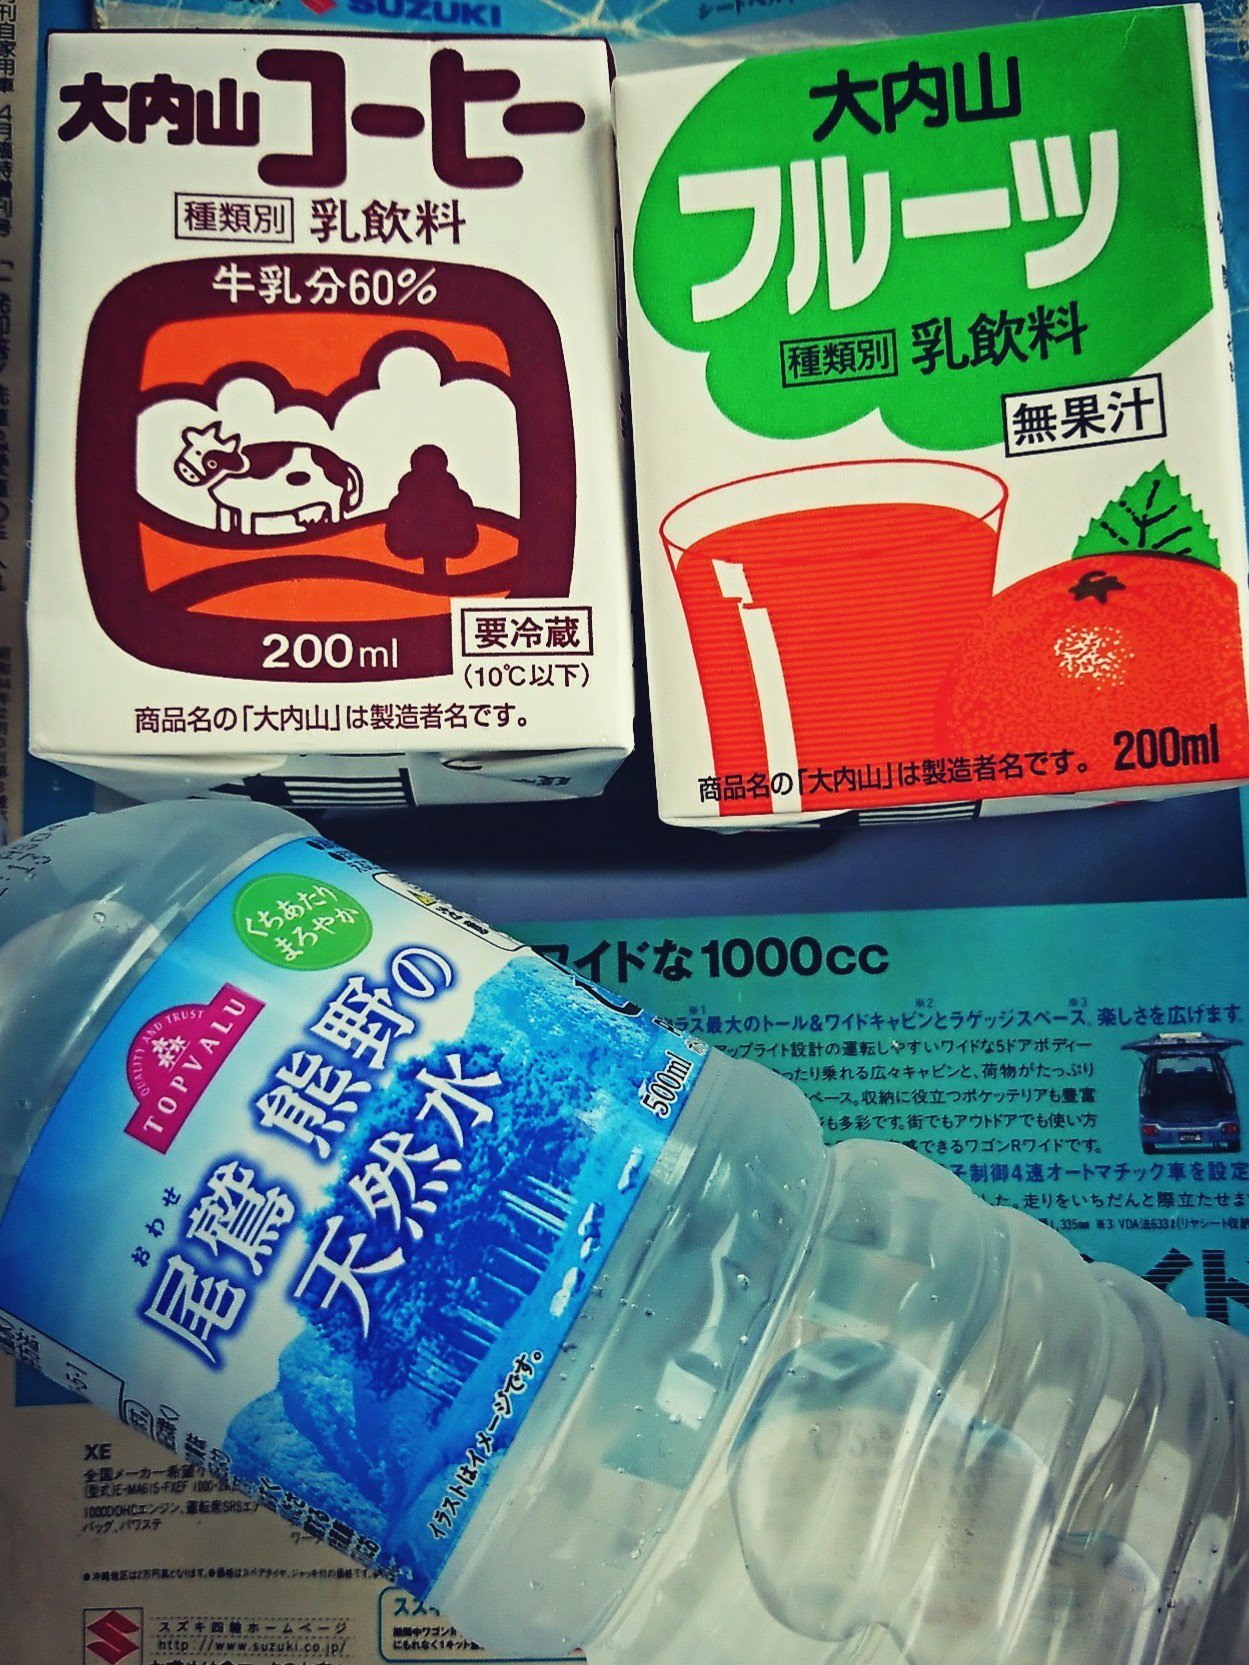 大内山コーヒー、大内山フルーツ、尾鷲 熊野の天然水。地元っぽい飲み物。 https://t.co/H4ydeckW5Z